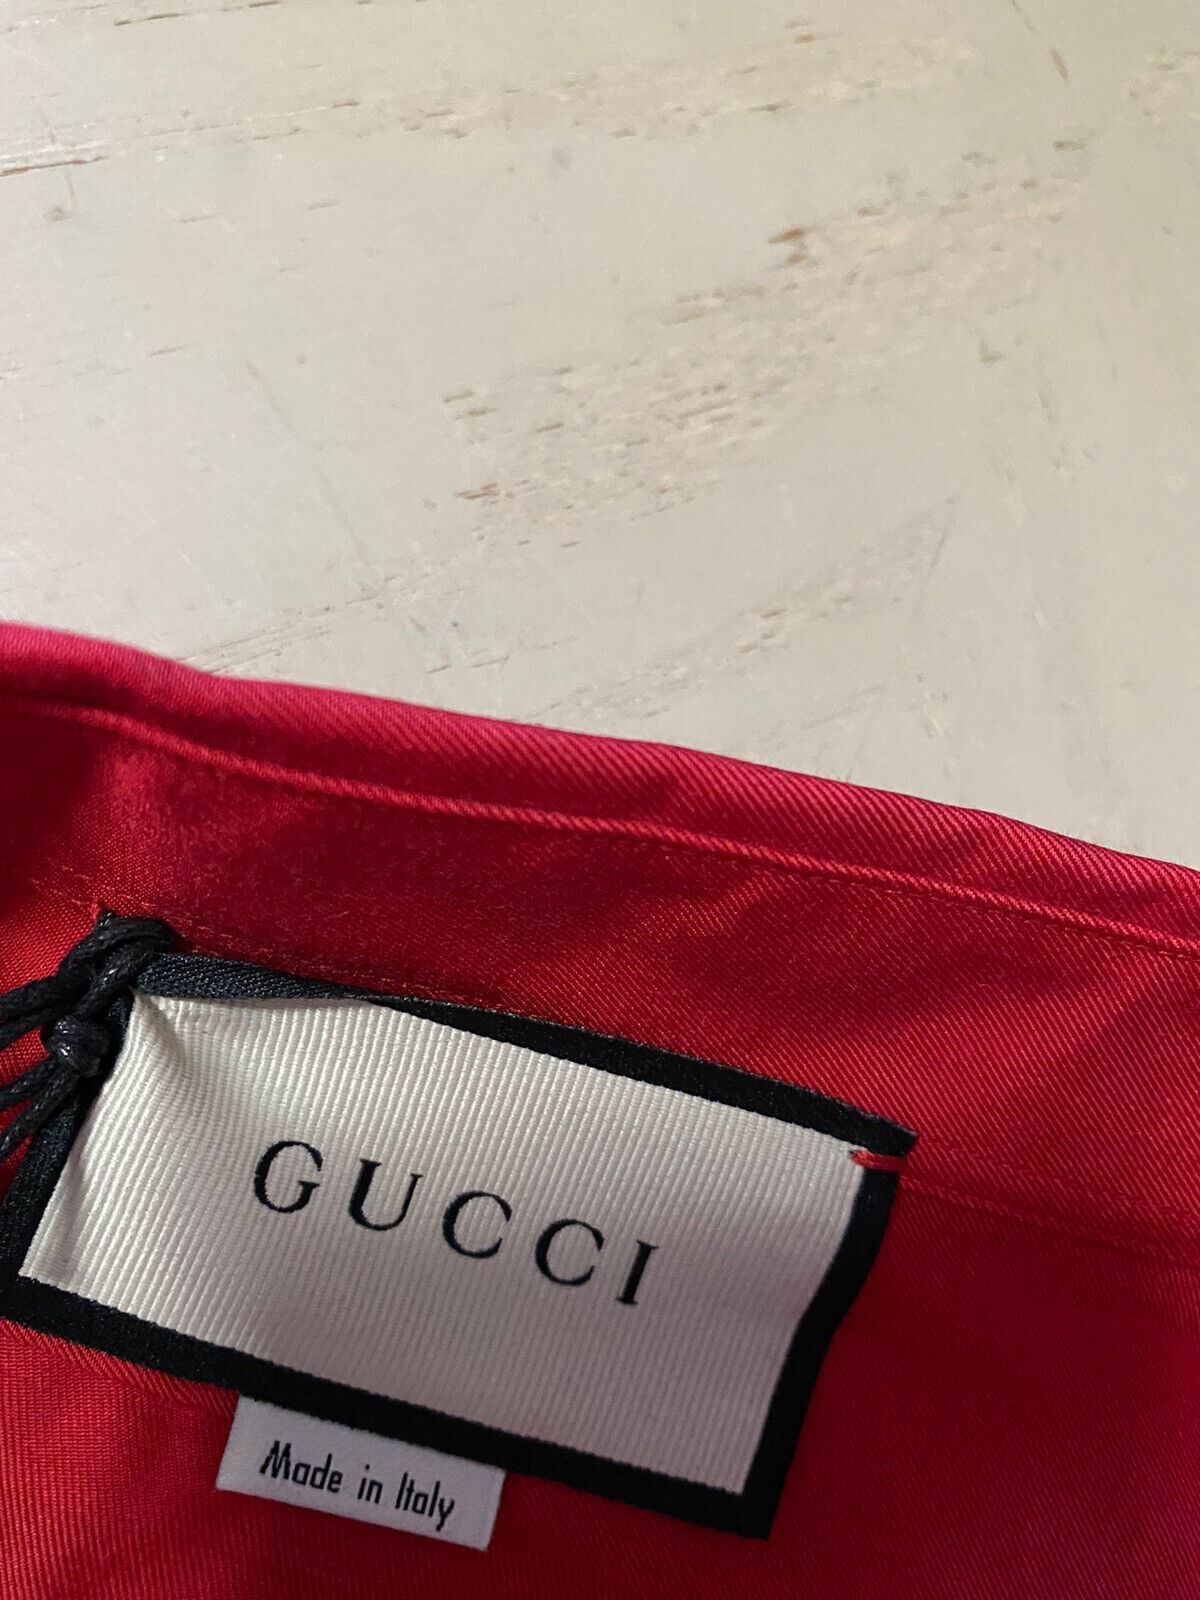 Neues Gucci Herren-Langarmhemd im Wert von 1200 $, DK Burgunderrot, Größe XXL/54, Eu, Italien